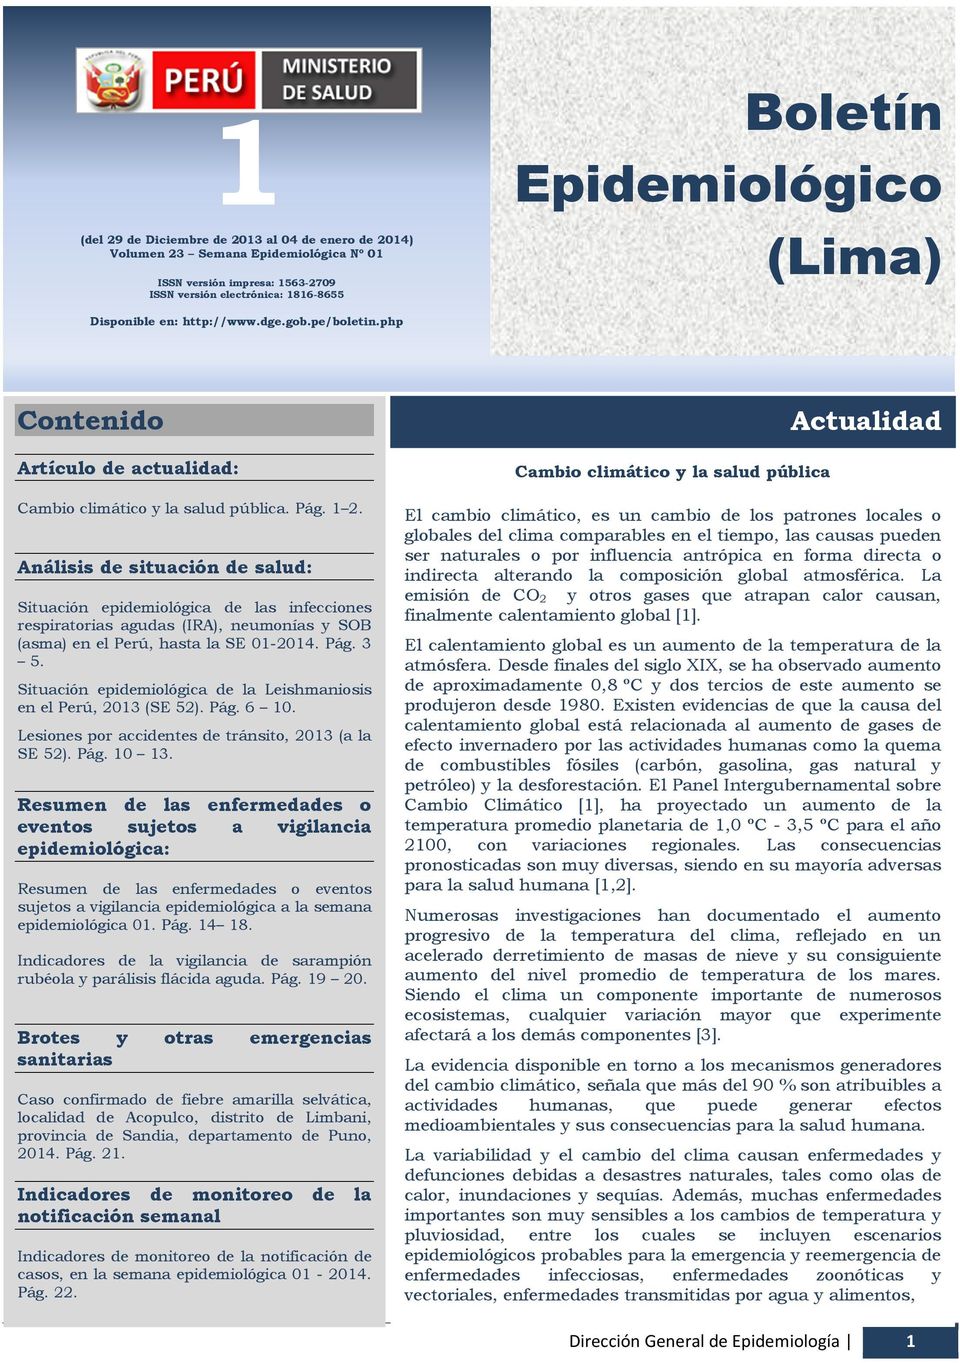 http://www.dge.gob.pe/boletin.php Boletín Epidemiológico (Lima) Contenido Artículo de actualidad: Cambio climático y la salud pública. Pág. 1 2.